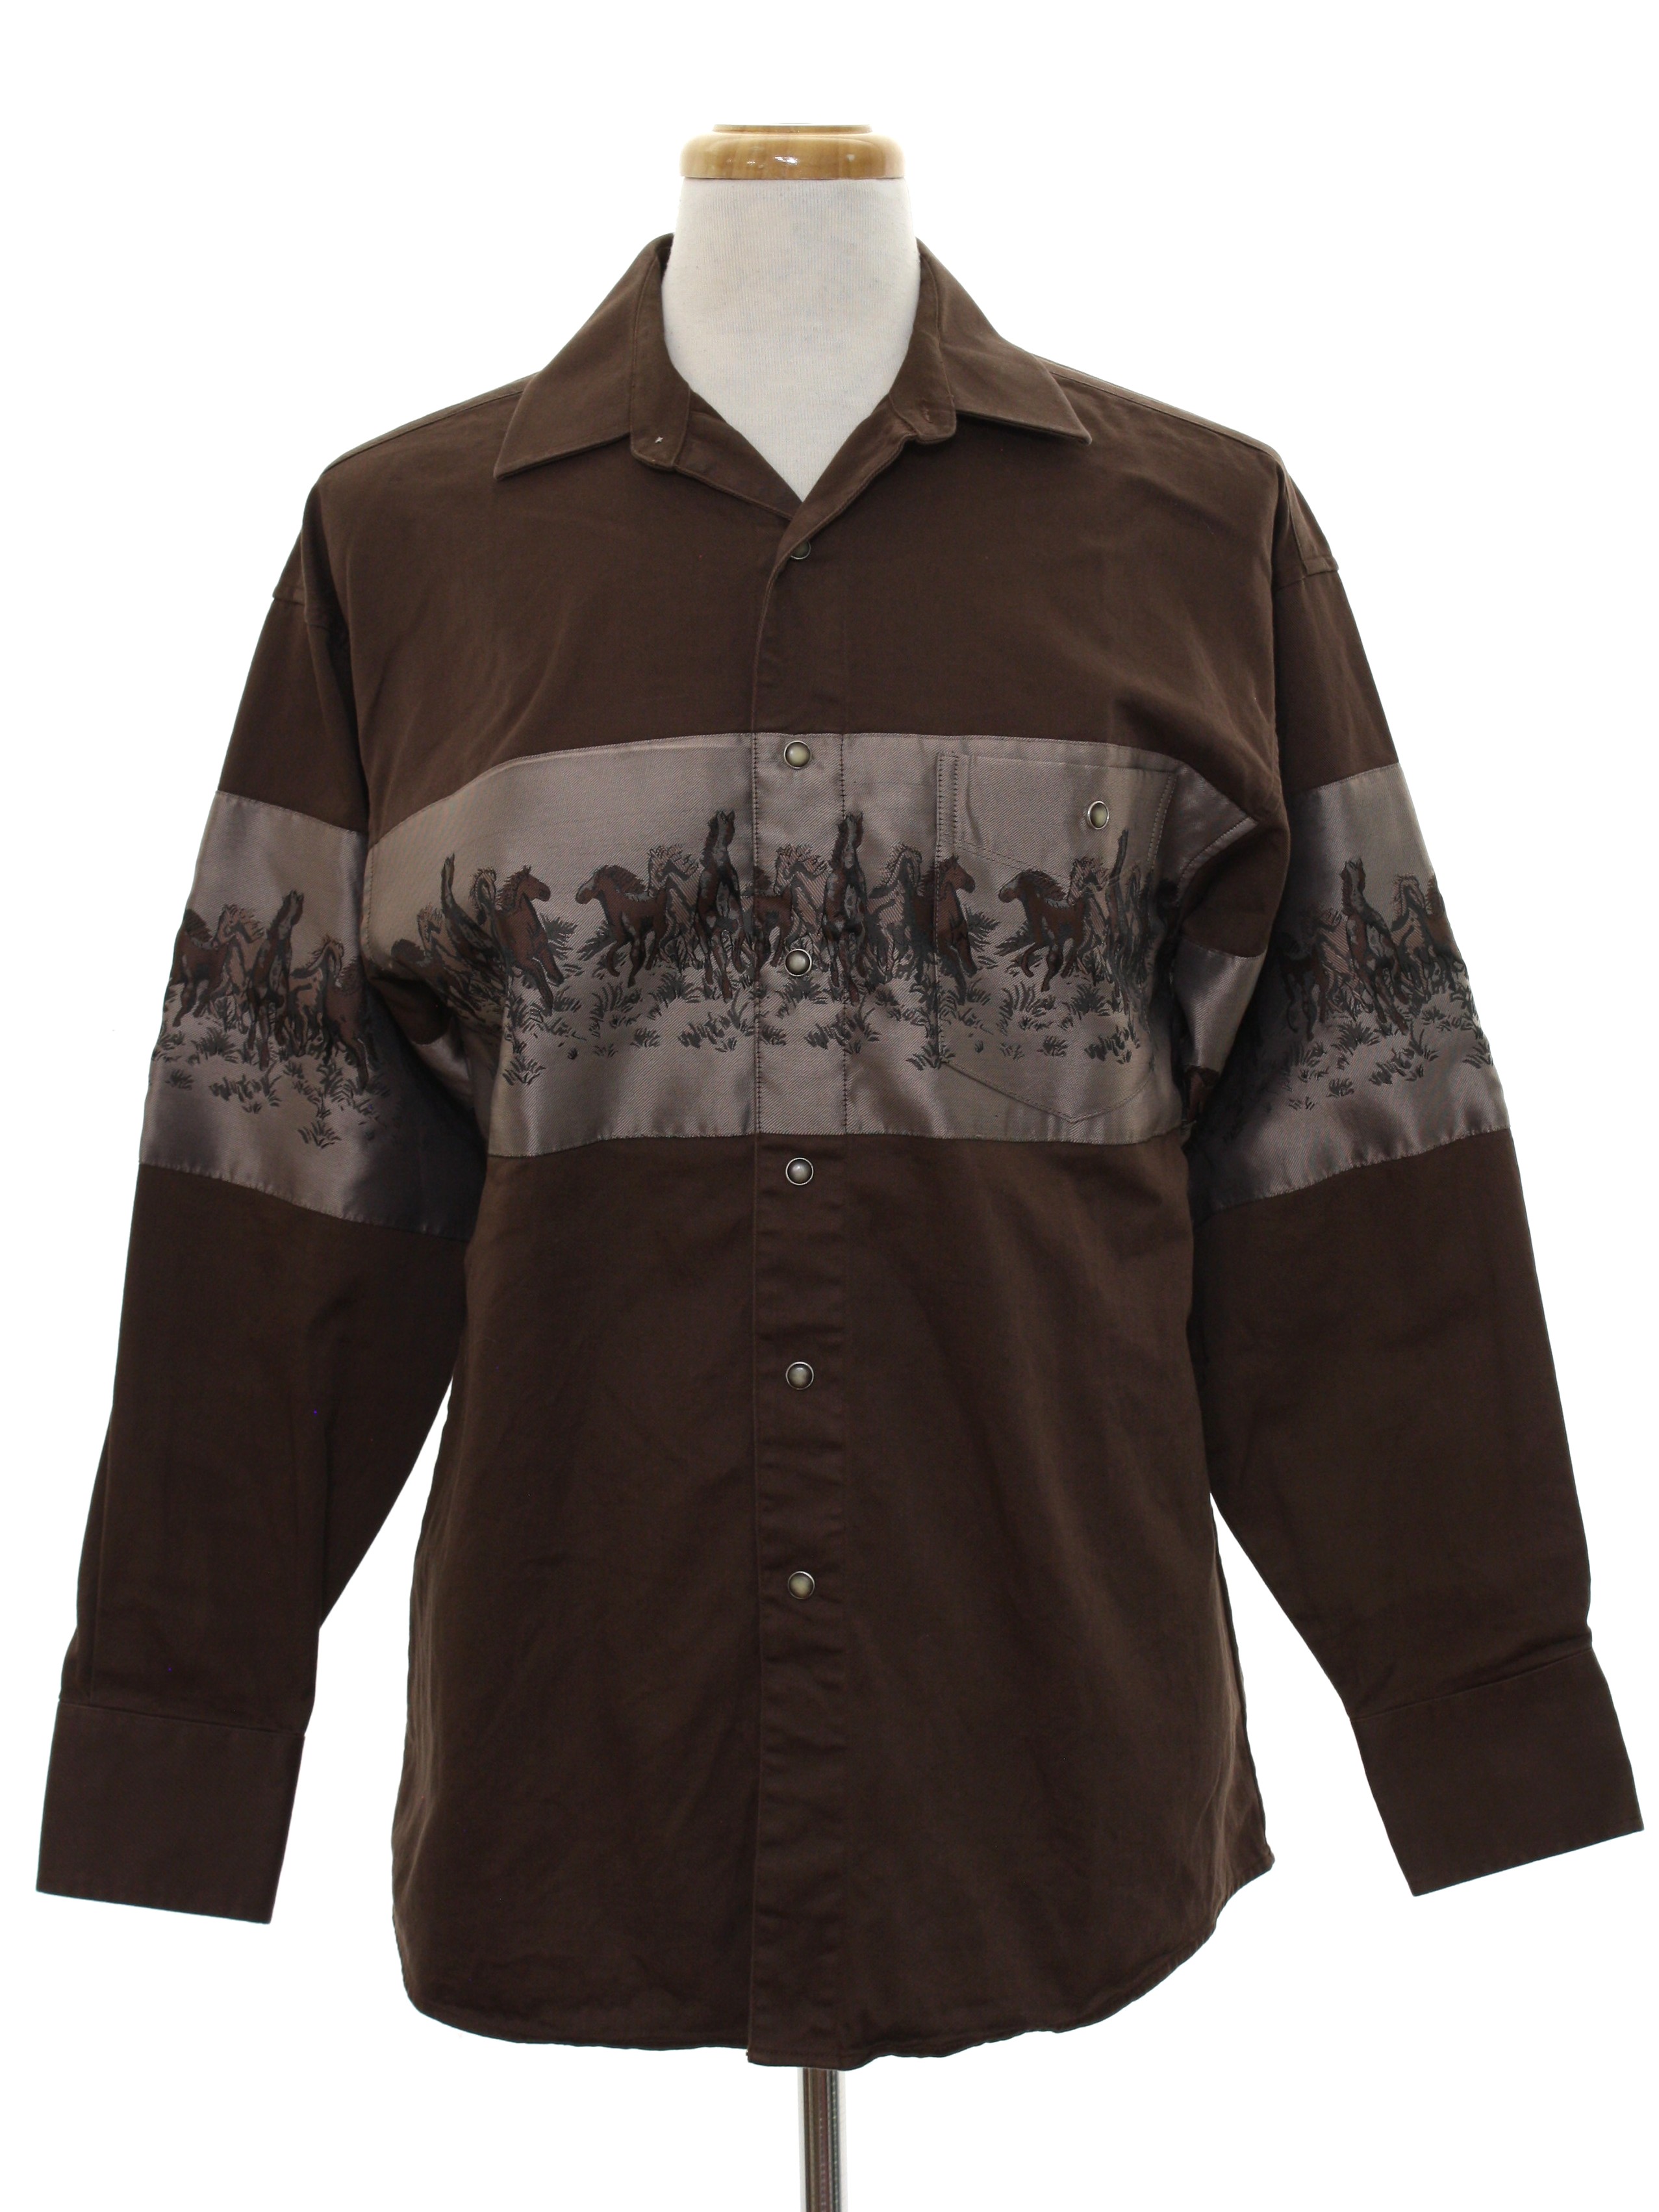 Retro Nineties Western Shirt: 90s or newer -Panhandle Slim- Mens dark ...